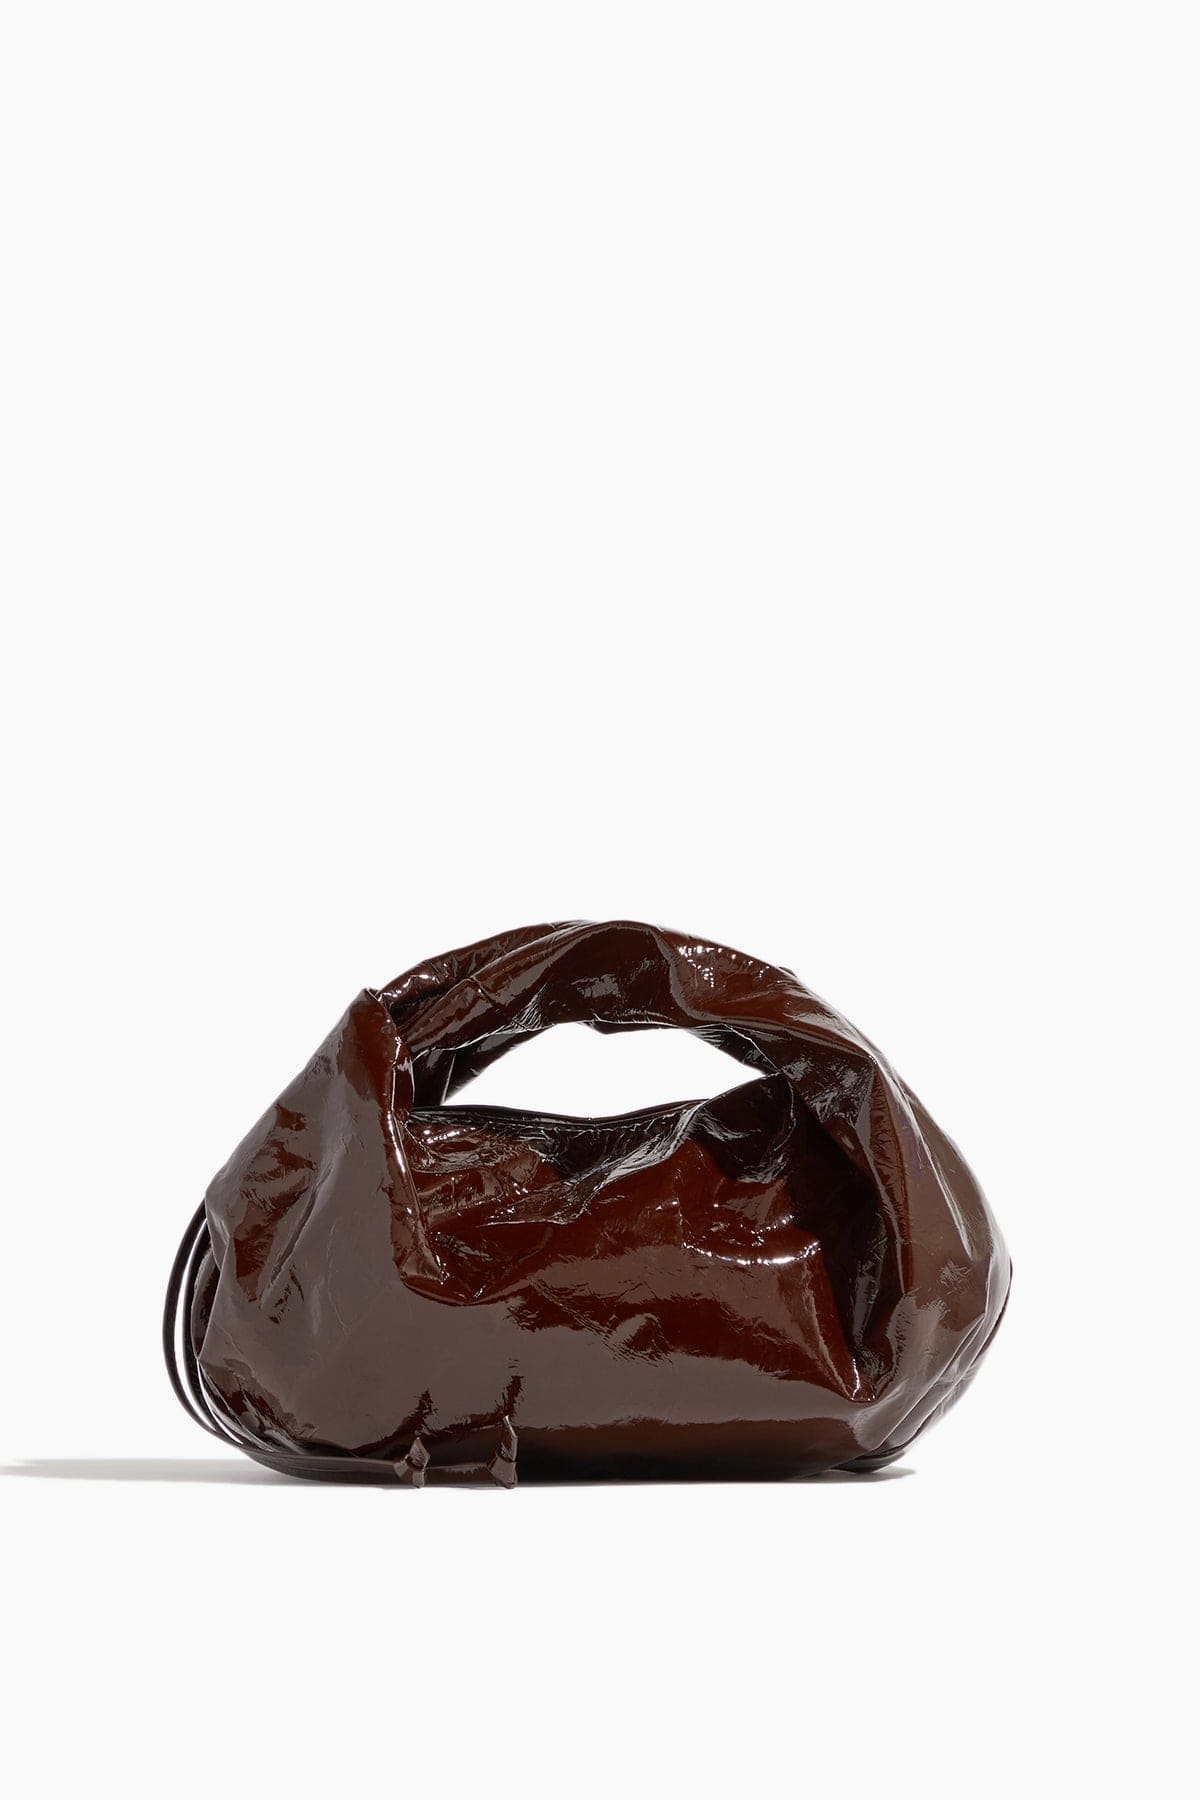 Dries Van Noten Top Handle Bags Tote Bag in Dark Brown